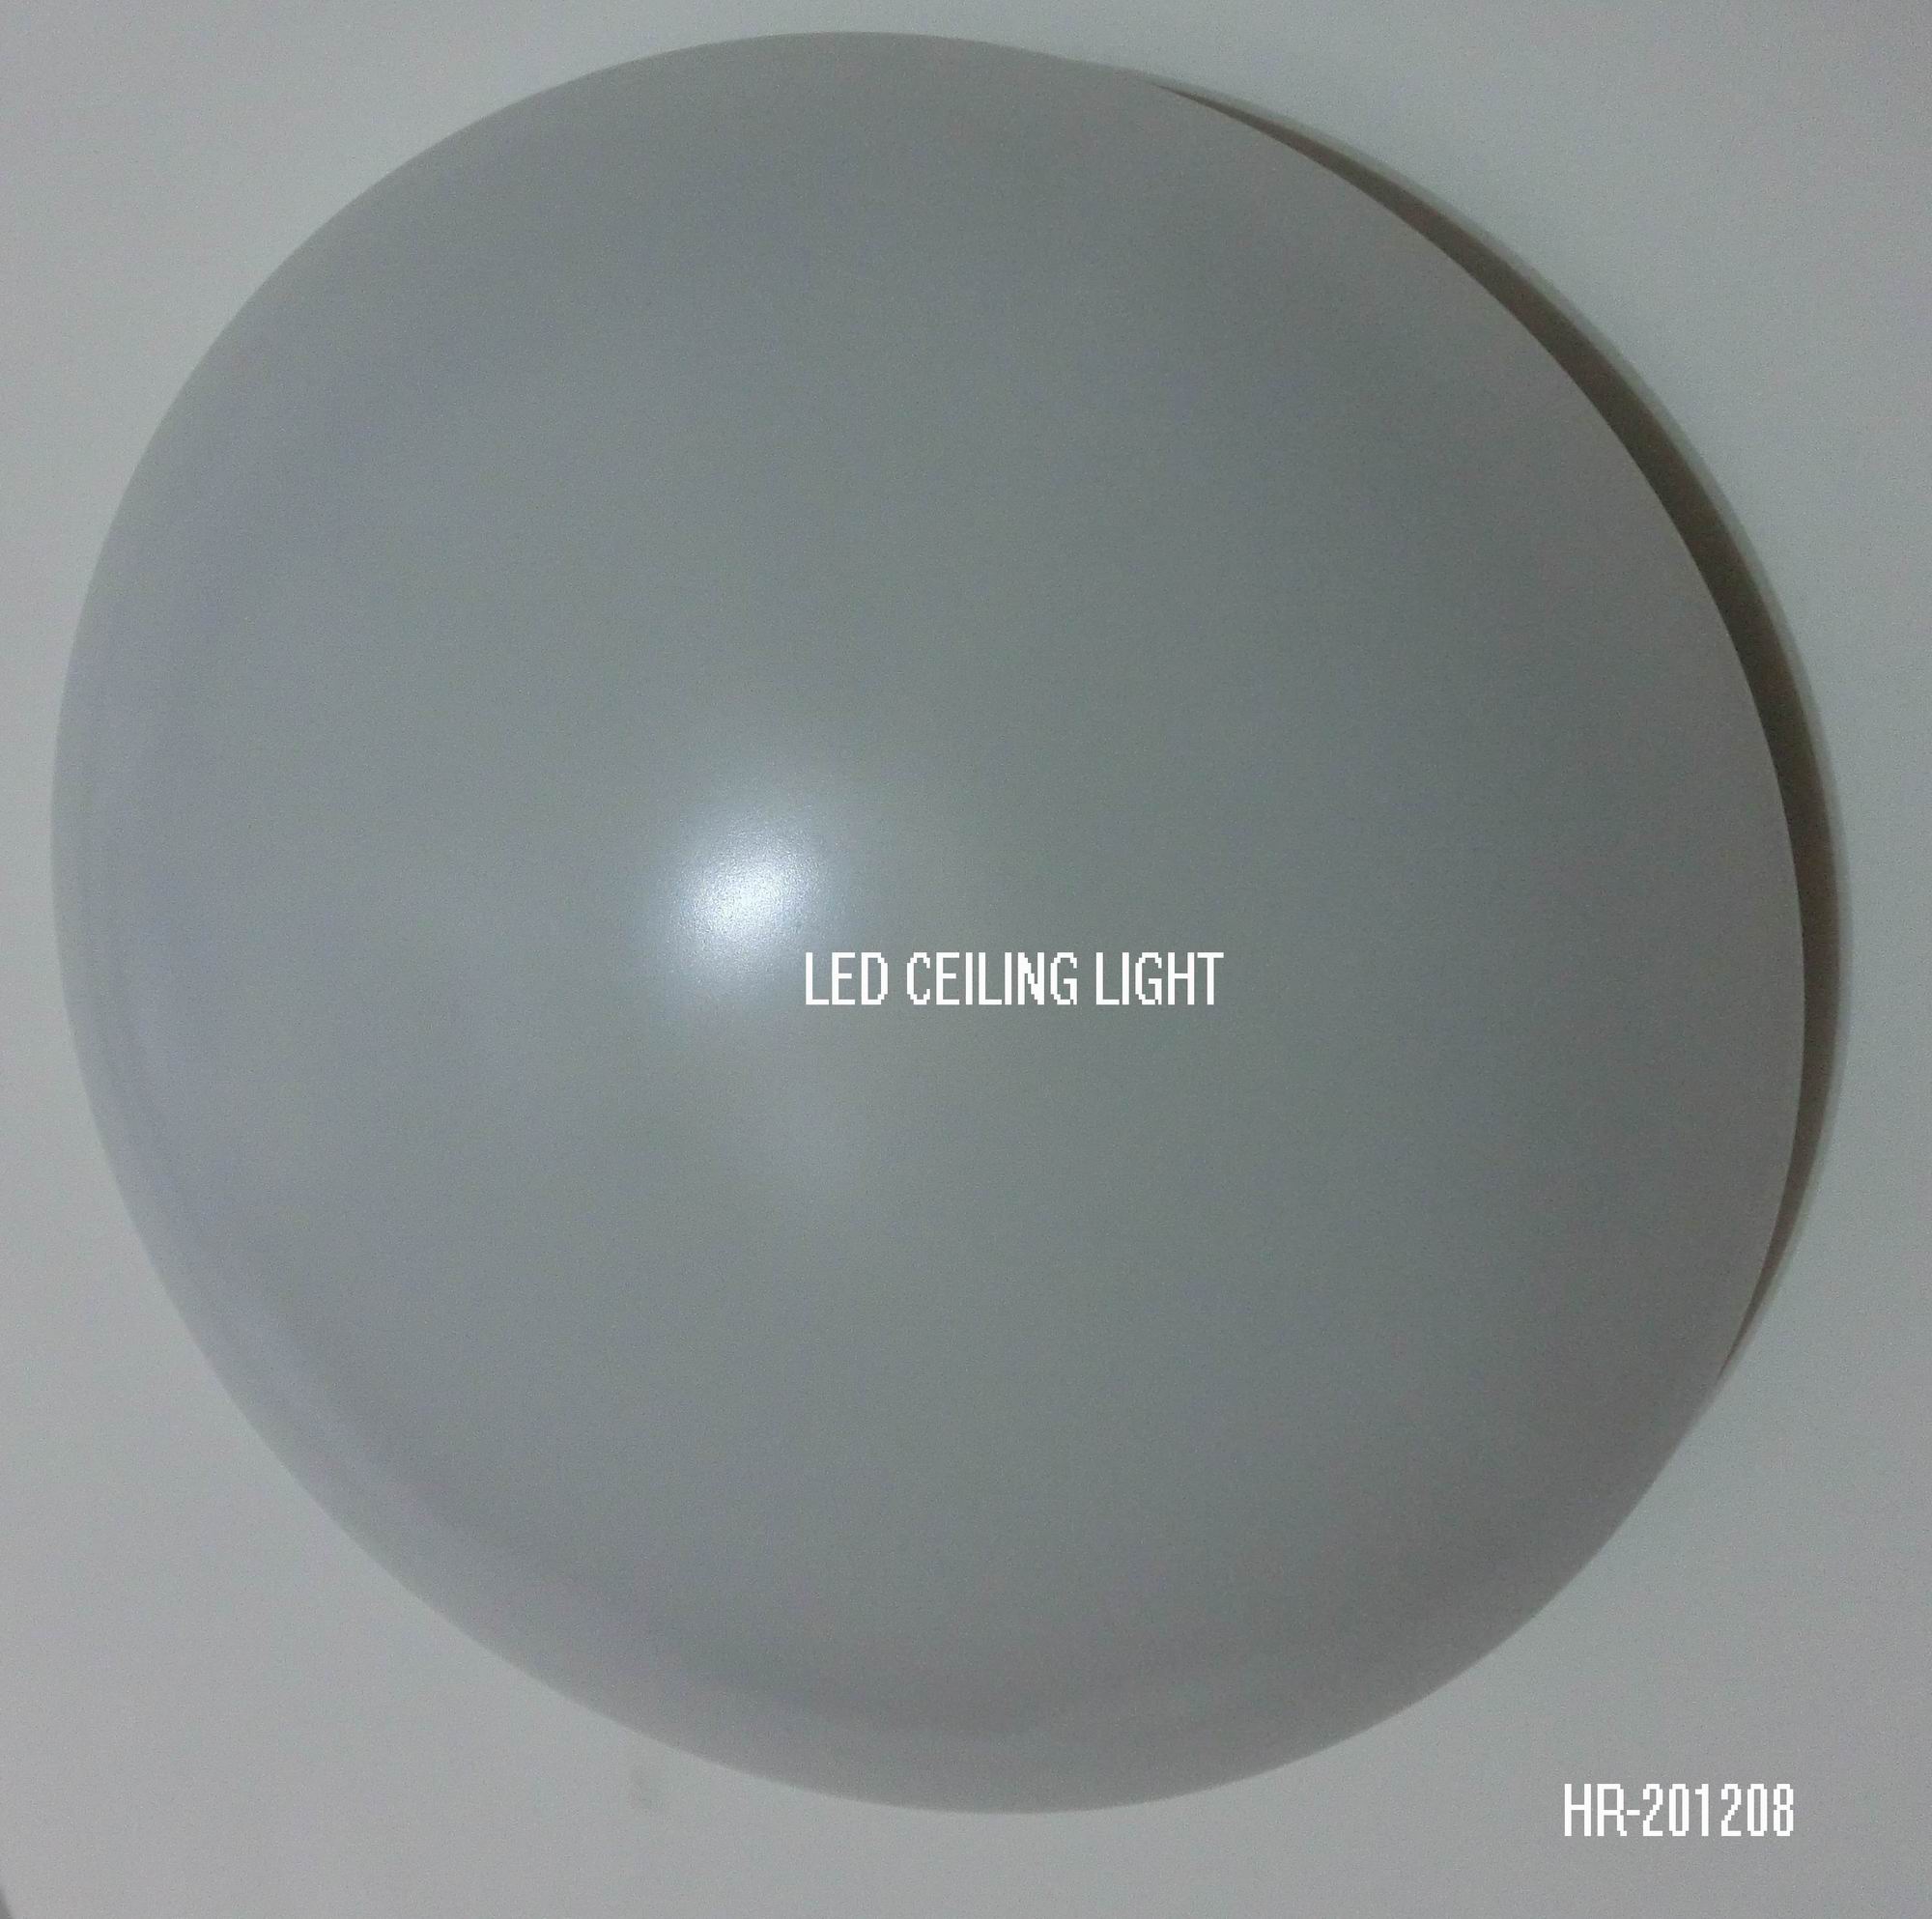 LED CEILING LIGHT HR-201208Spec:Unit: